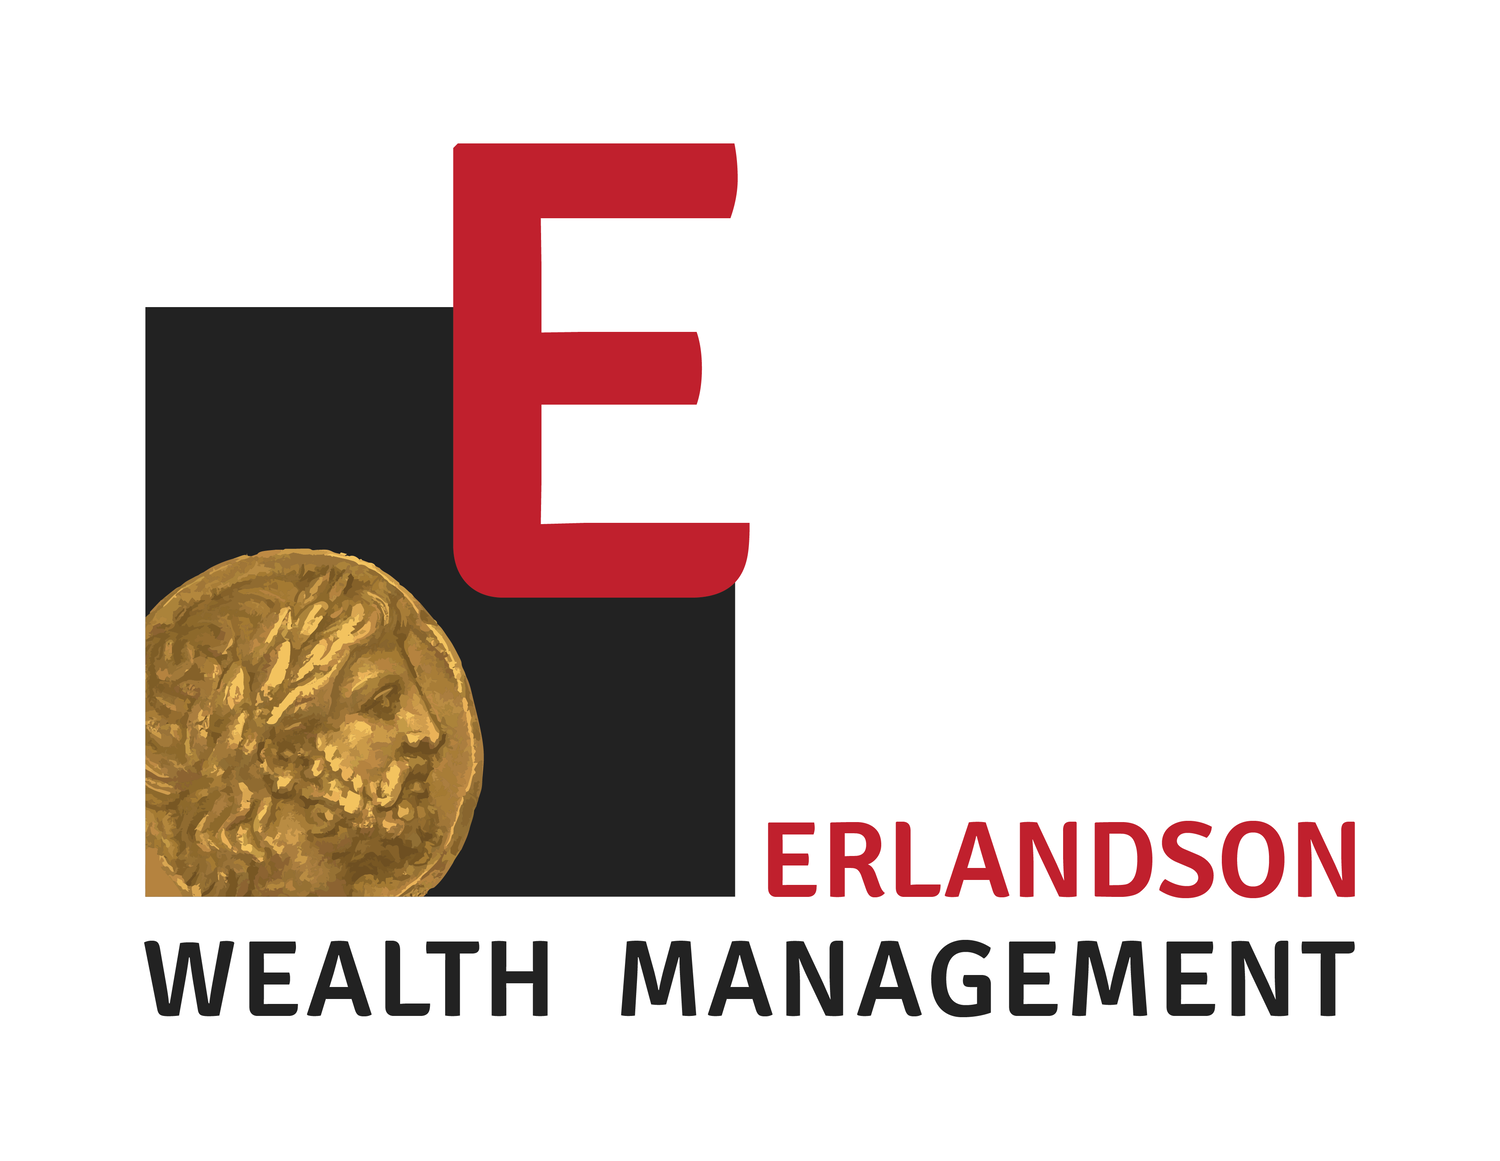 Erlandson Wealth Management